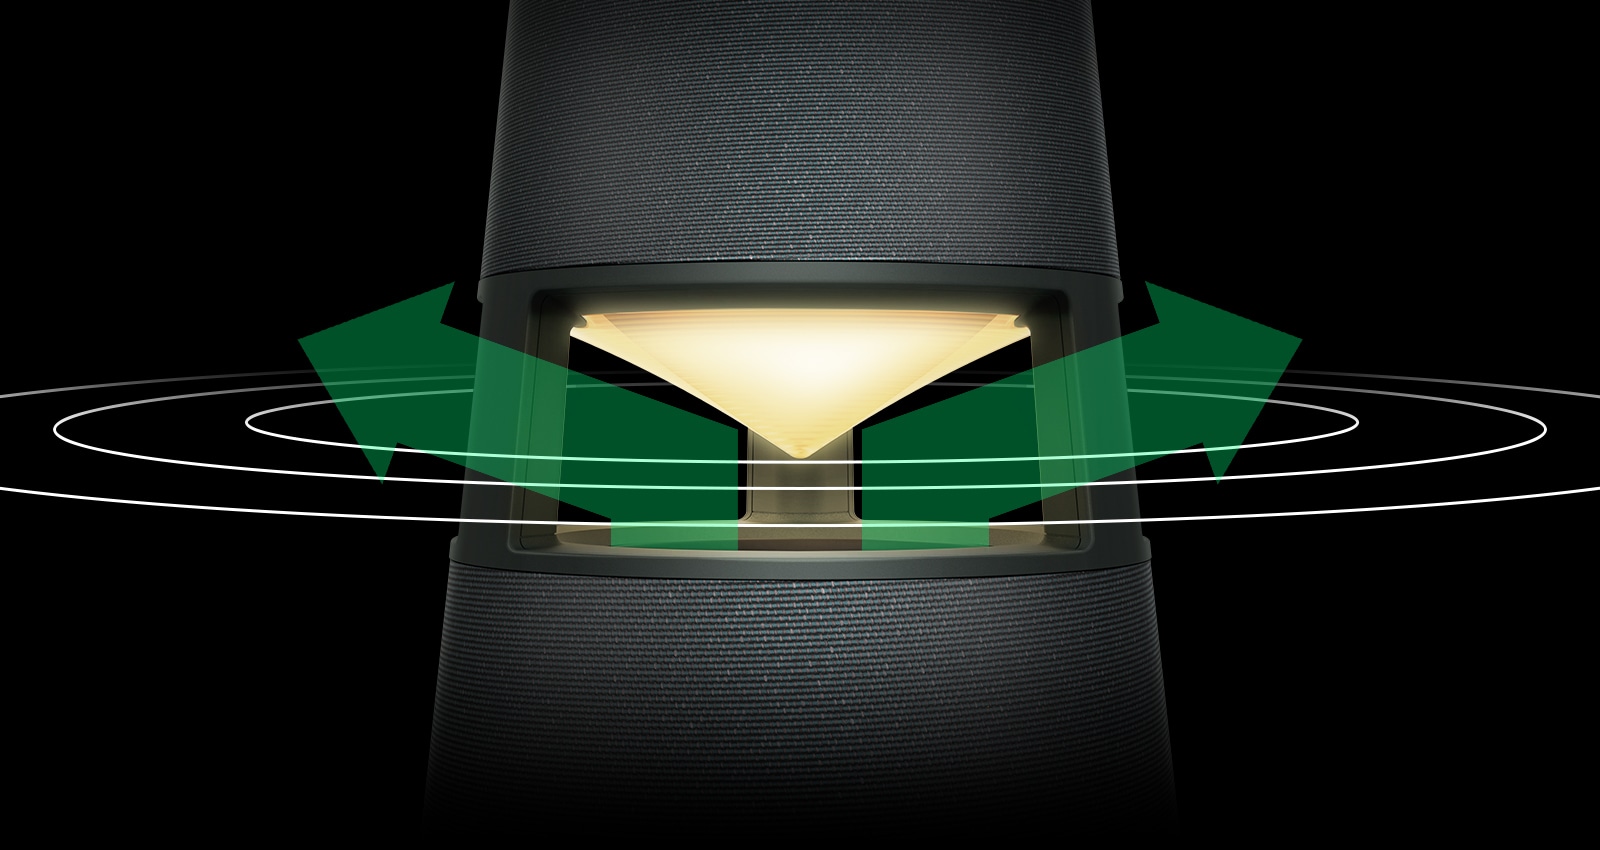 Billede af en gulbelyst XBOOM 360 med grønne pile på venstre og højre side af reflektoren og lydbølger, der spreder sig omkring pilen.